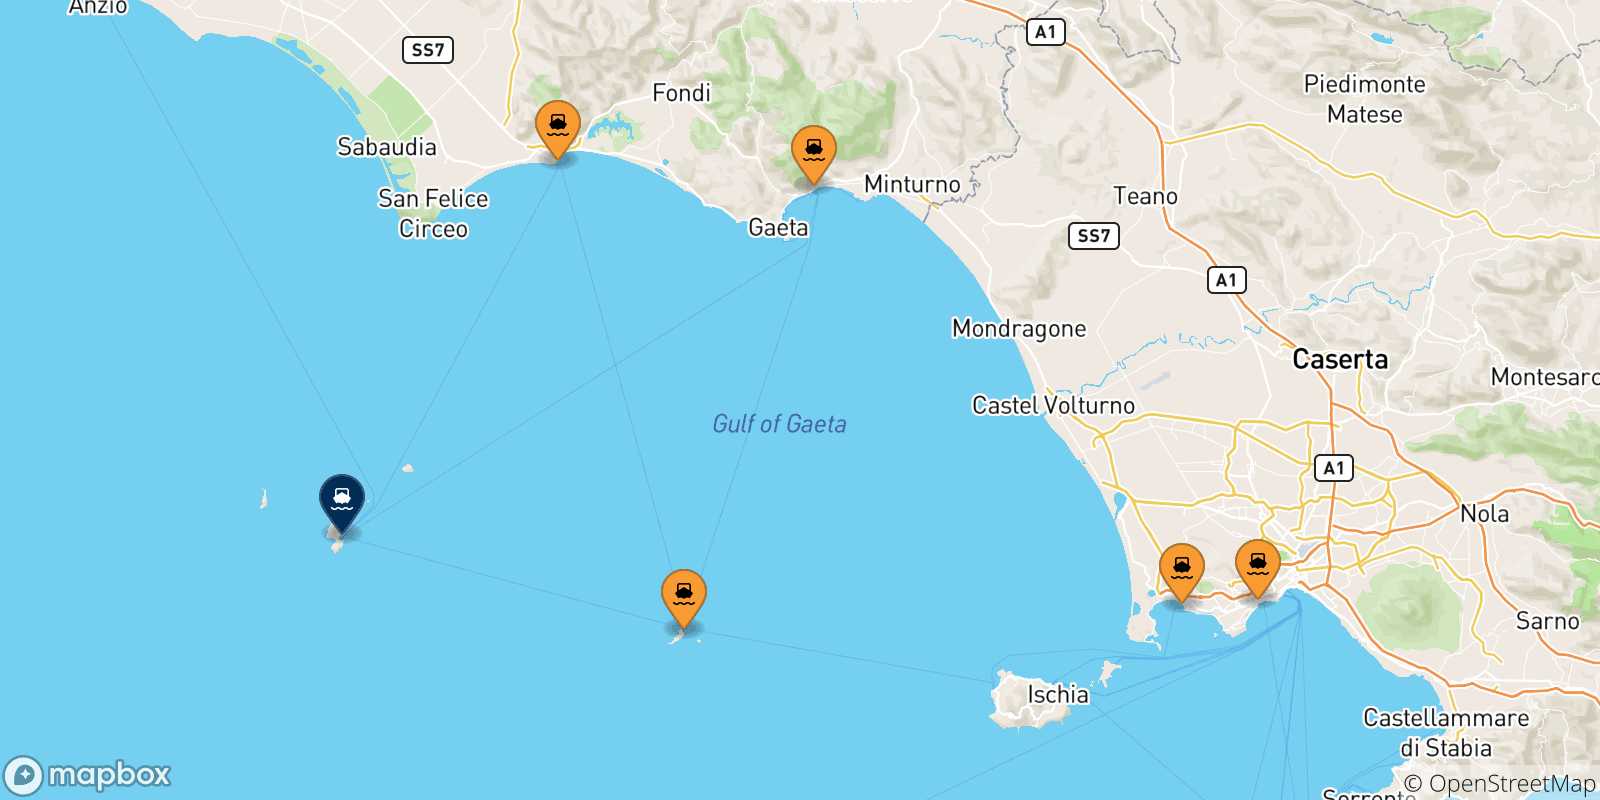 Mappa delle possibili rotte tra l'Italia e Ponza